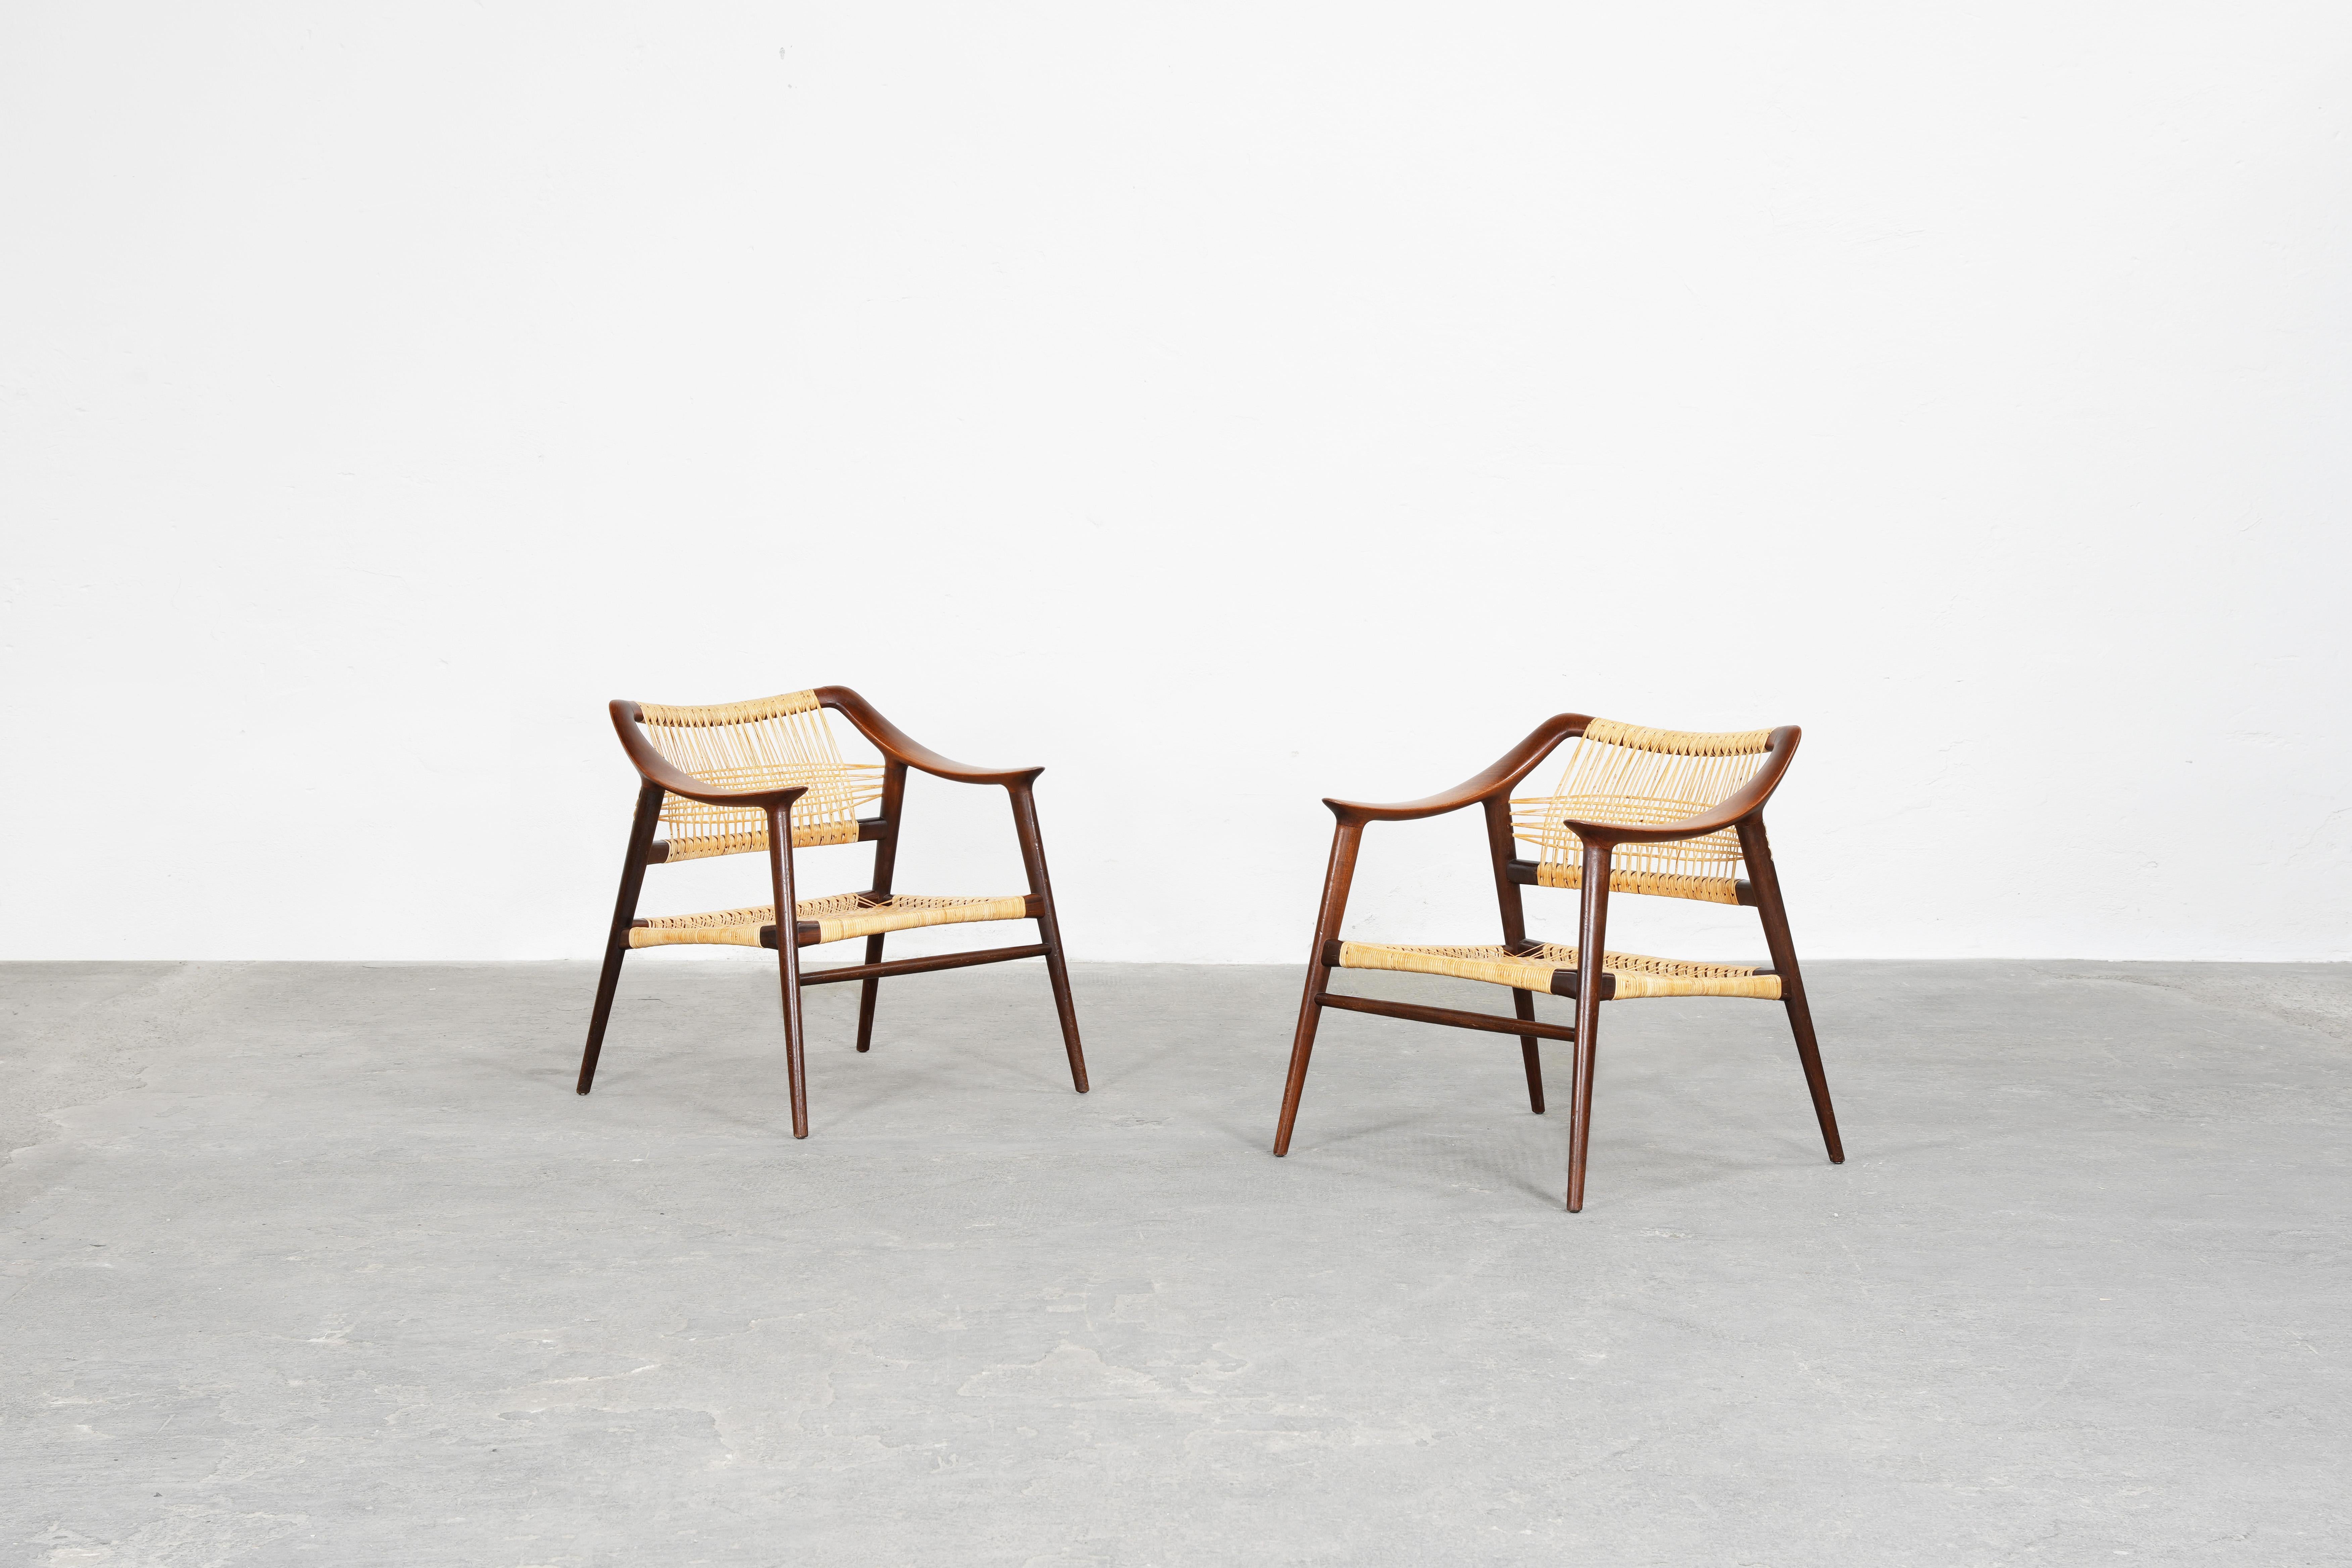 Magnifique paire de chaises longues modèle 56/2 'Bambi' conçue par Rolf Rastad & Adolf Relling et produite par Gustav Bahus, Norvège en 1954.
Les deux chaises sont en teck et en rotin et sont en excellent état.